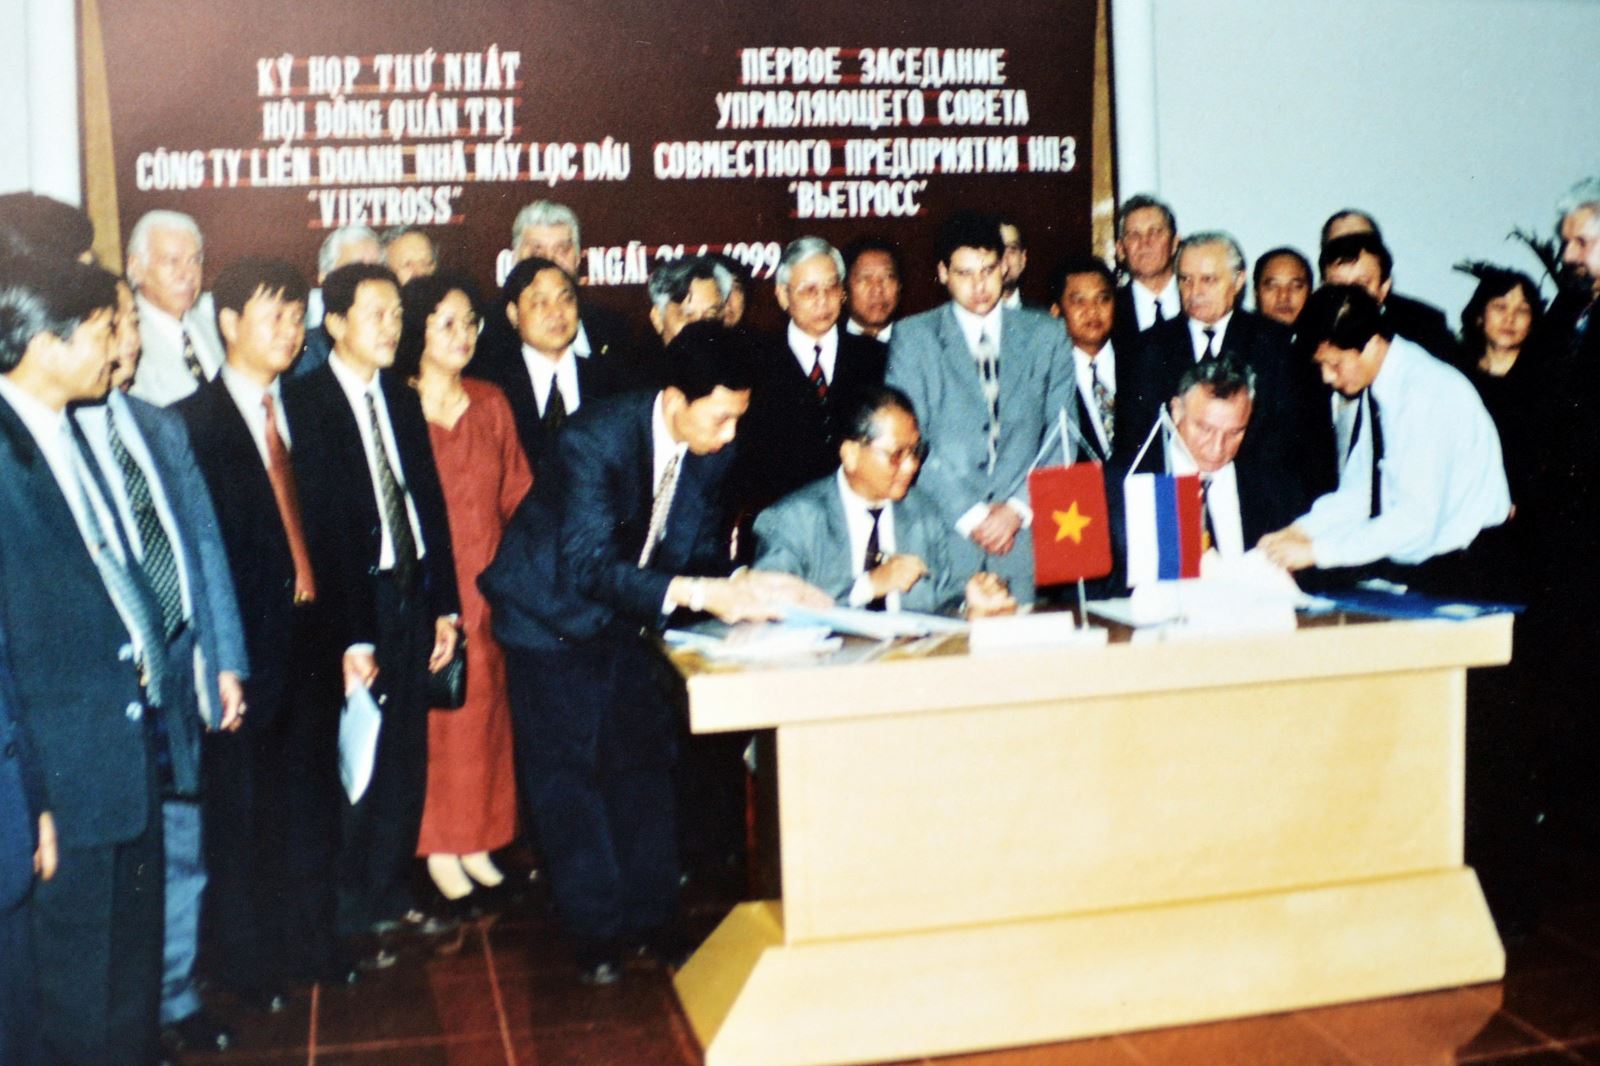 Ngày 28/12/1998 Công ty Liên doanh Nhà máy Lọc dầu Việt - Nga (Vietross) chính thức được thành lập theo Giấy phép đầu tư số 2097/GP-KHĐT của Bộ Kế hoạch và Đầu tư Nước CHXHCN Việt Nam. Ảnh: Kỳ họp thứ I Hội đồng quản trị Công ty liên doanh NMLD Việt – Nga. (Ảnh tư liệu)